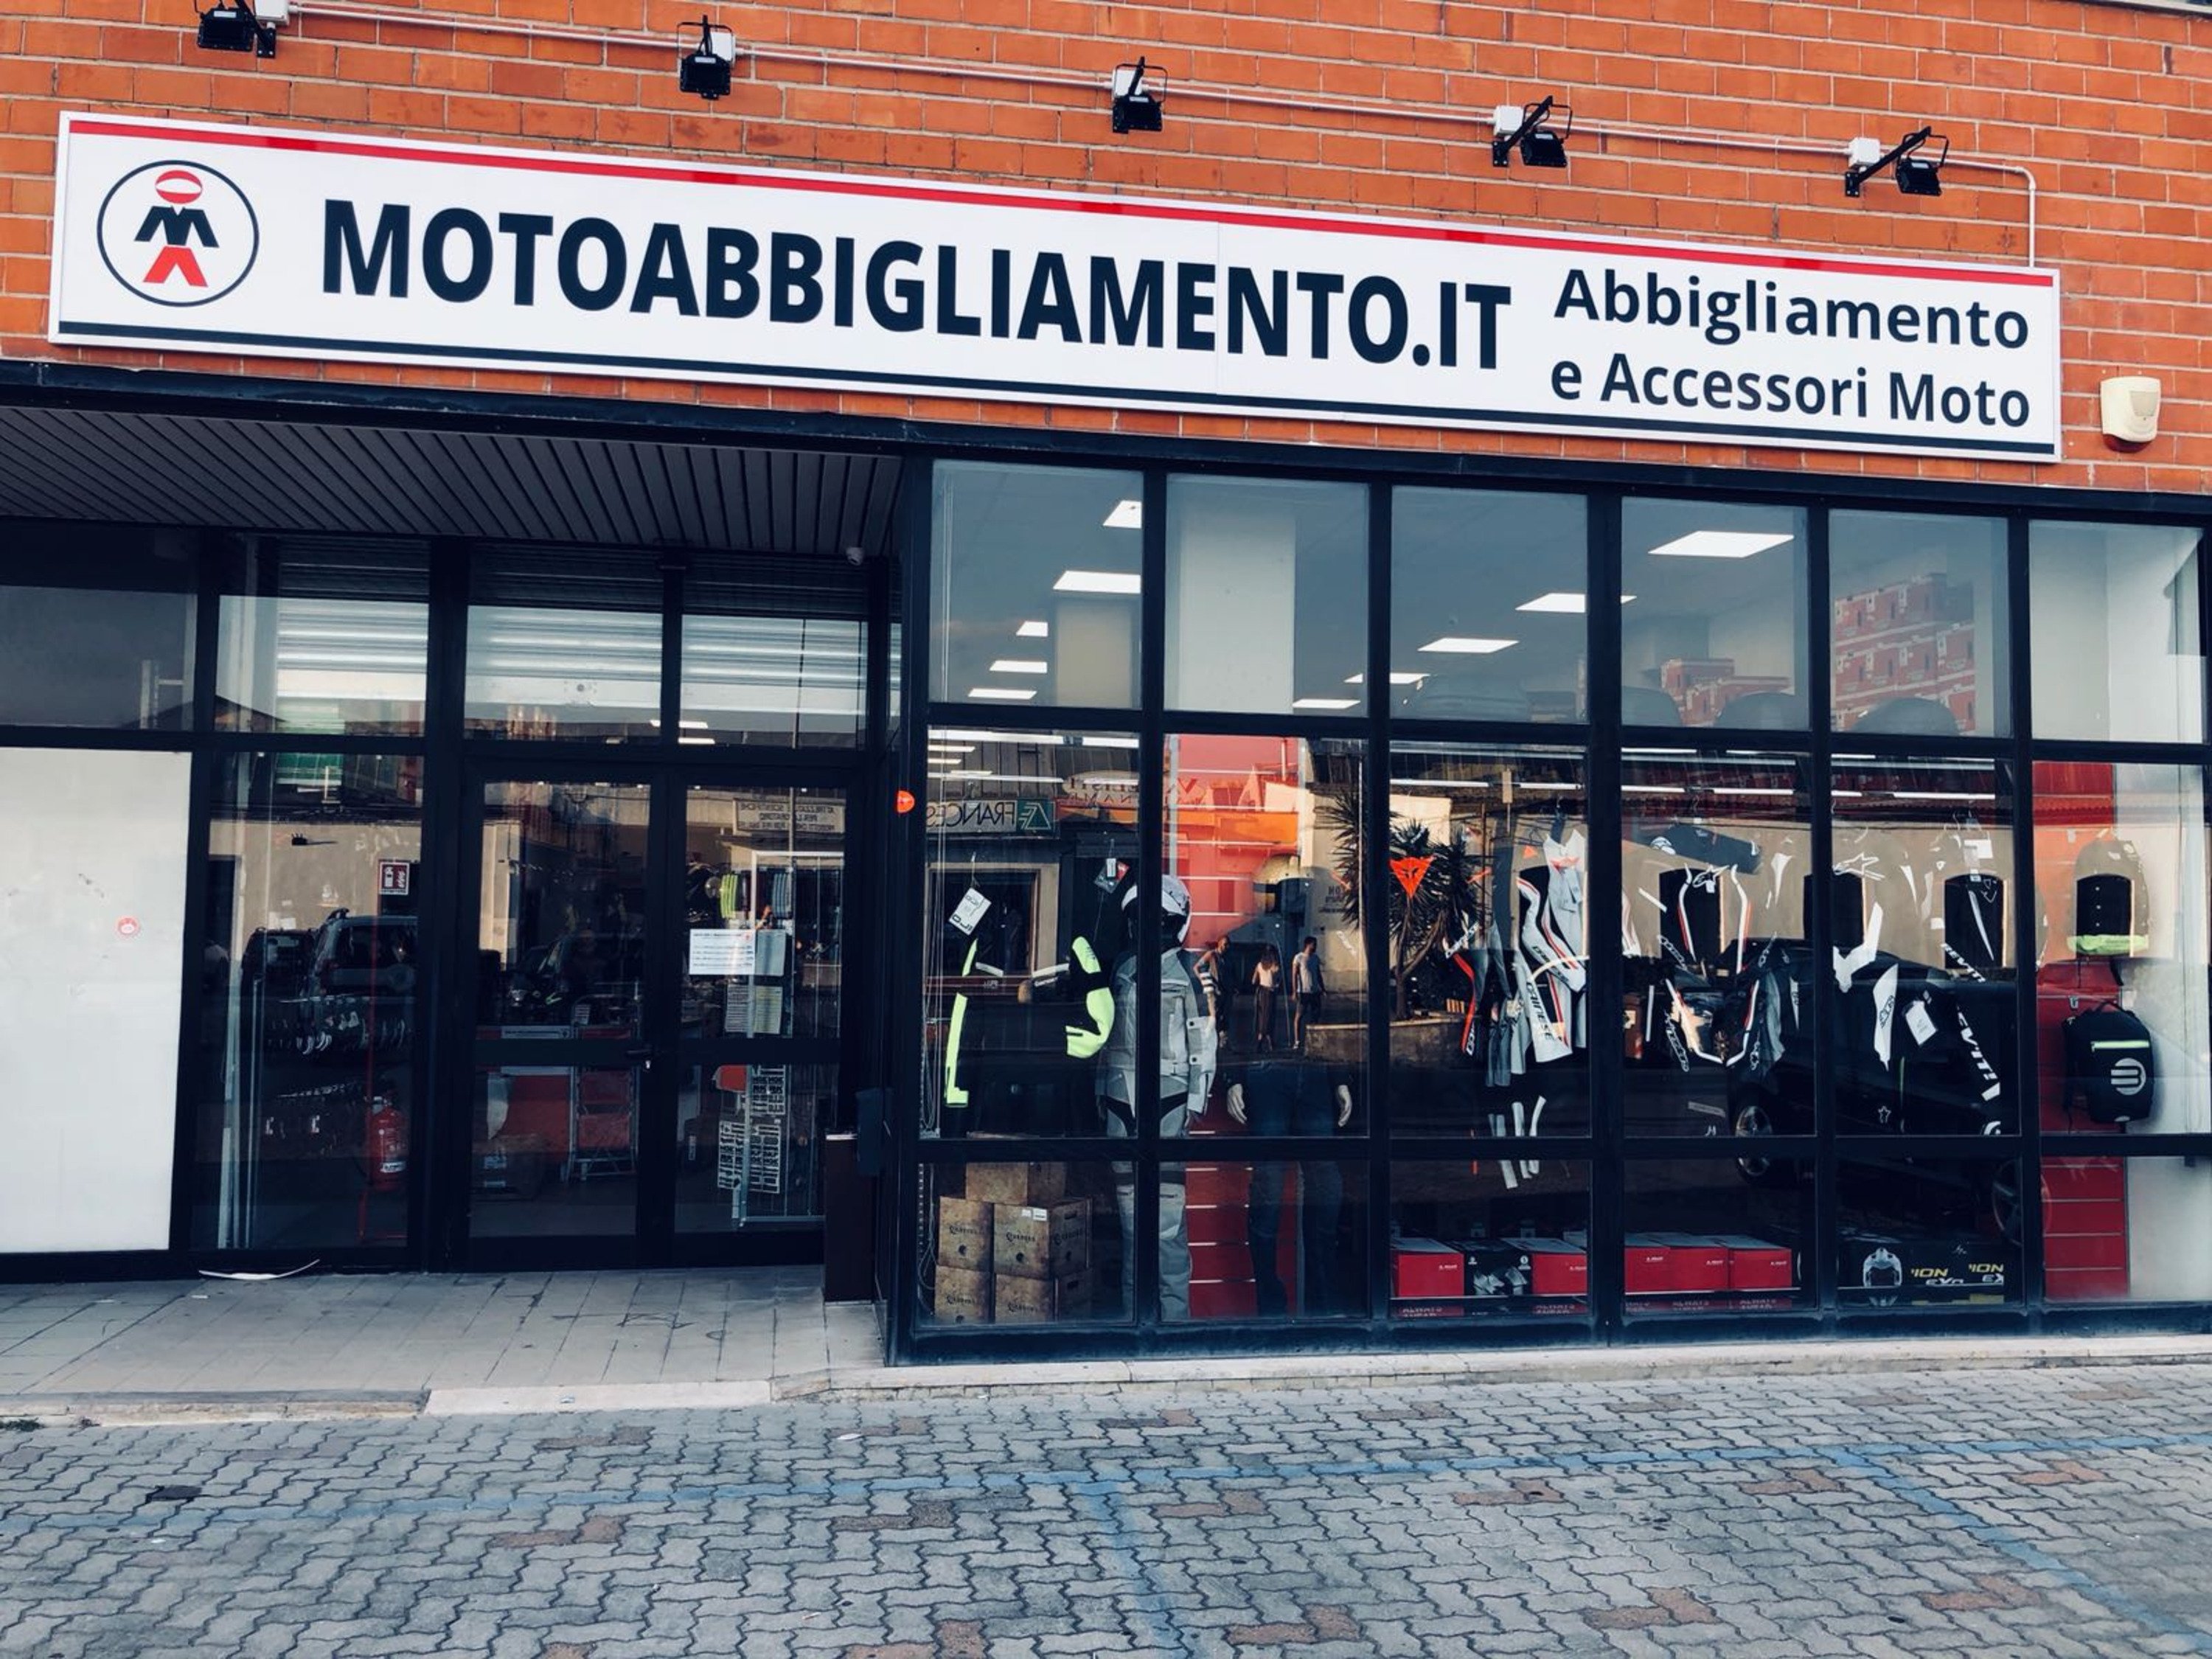 Motoabbigliamento.it inaugura un nuovo punto vendita a Torino